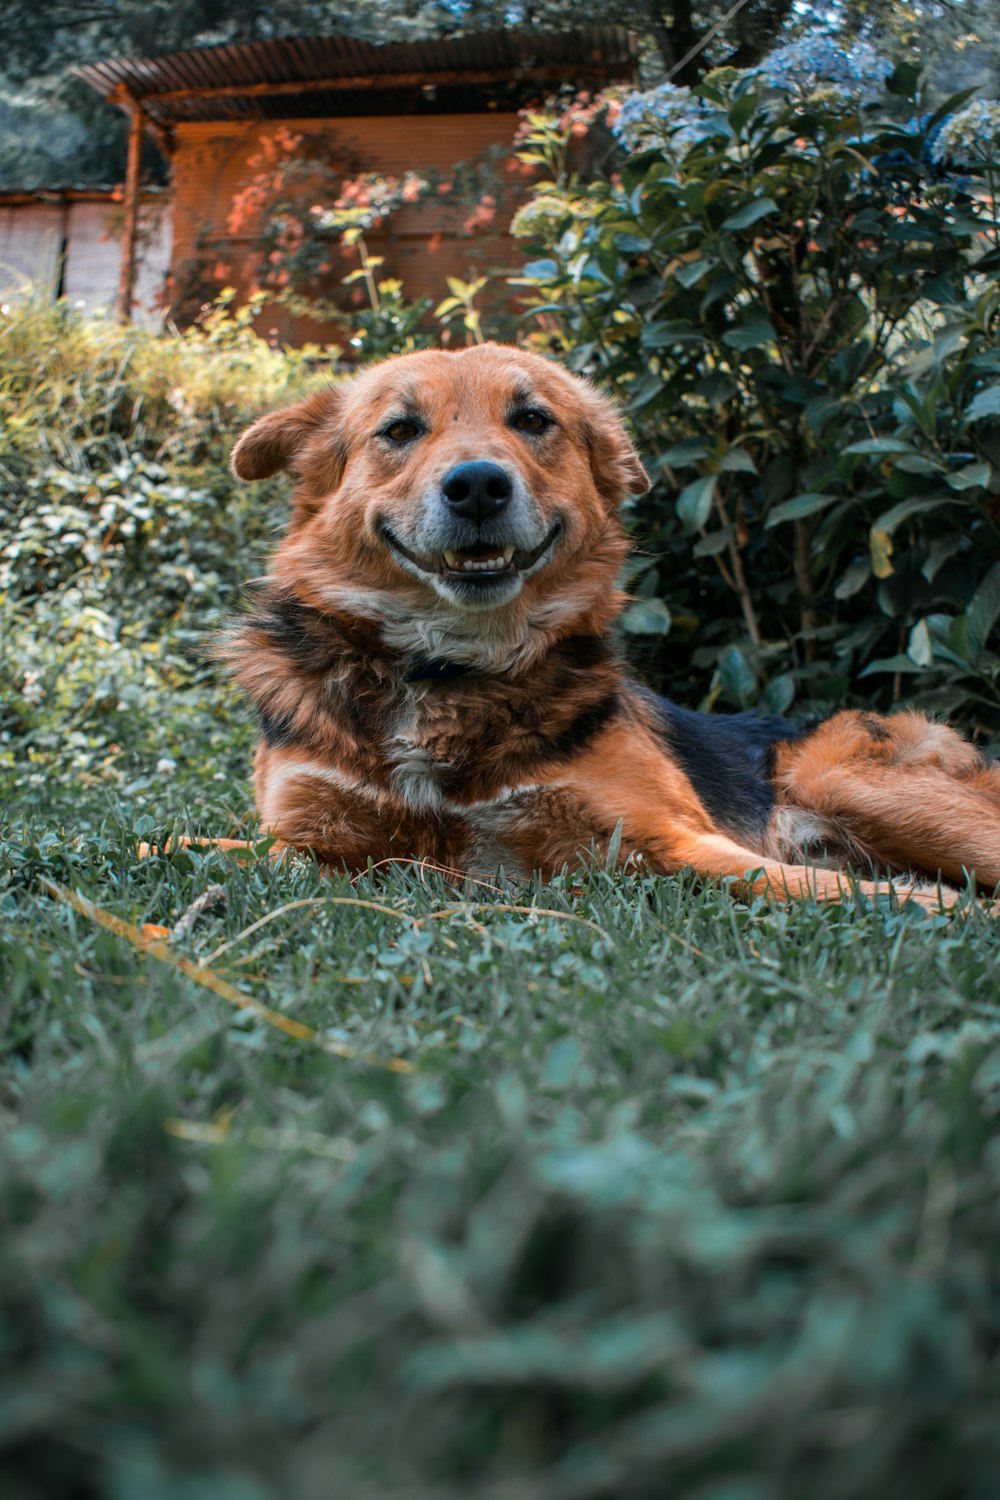 昼間、緑の芝生の上に横たわる茶色と黒の短いコートの犬